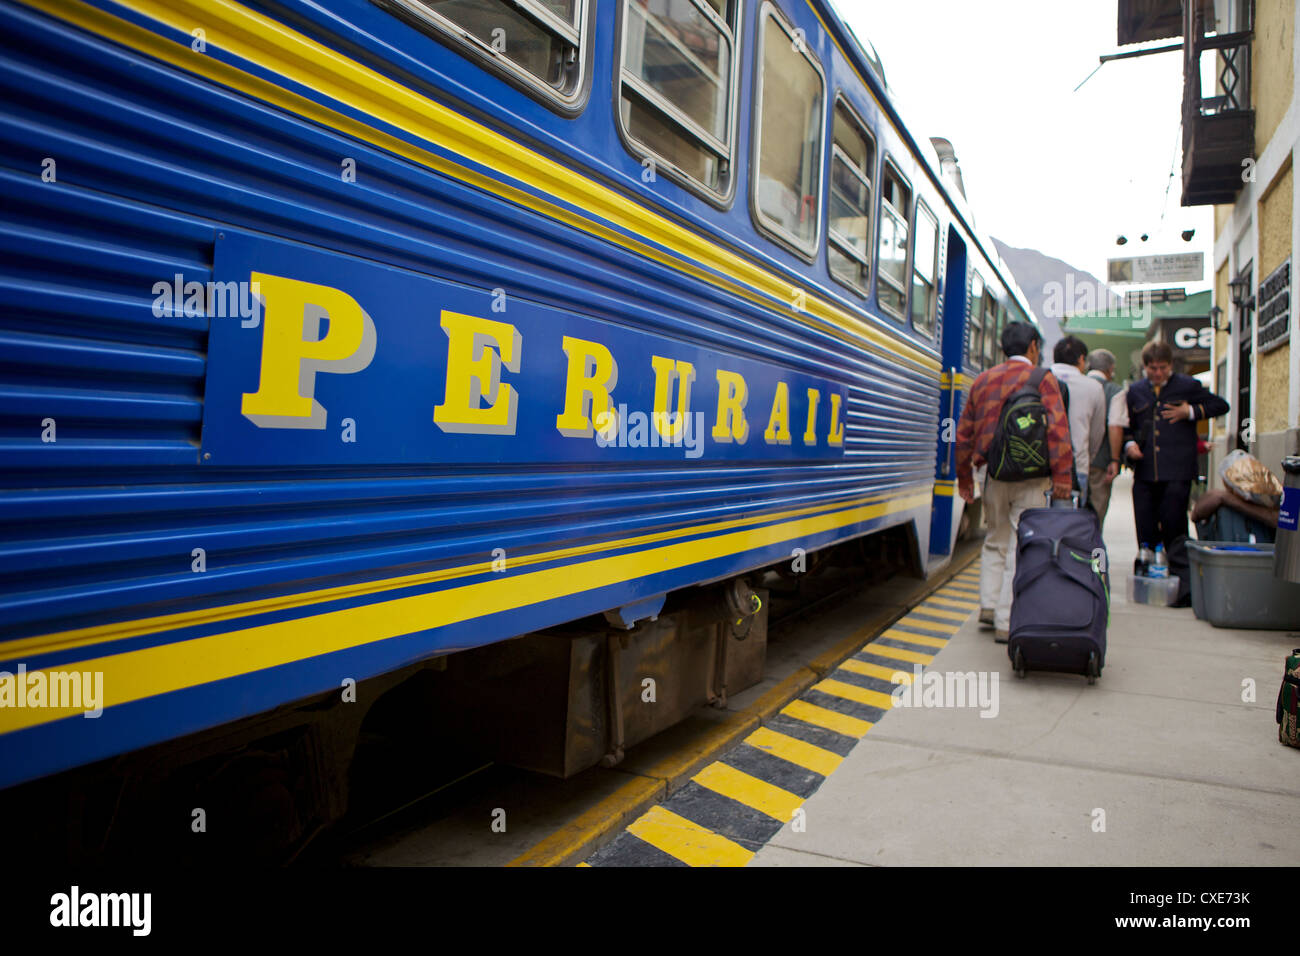 Peru rail train, peru, peruvian, south america, south american, latin america, latin american South America Stock Photo